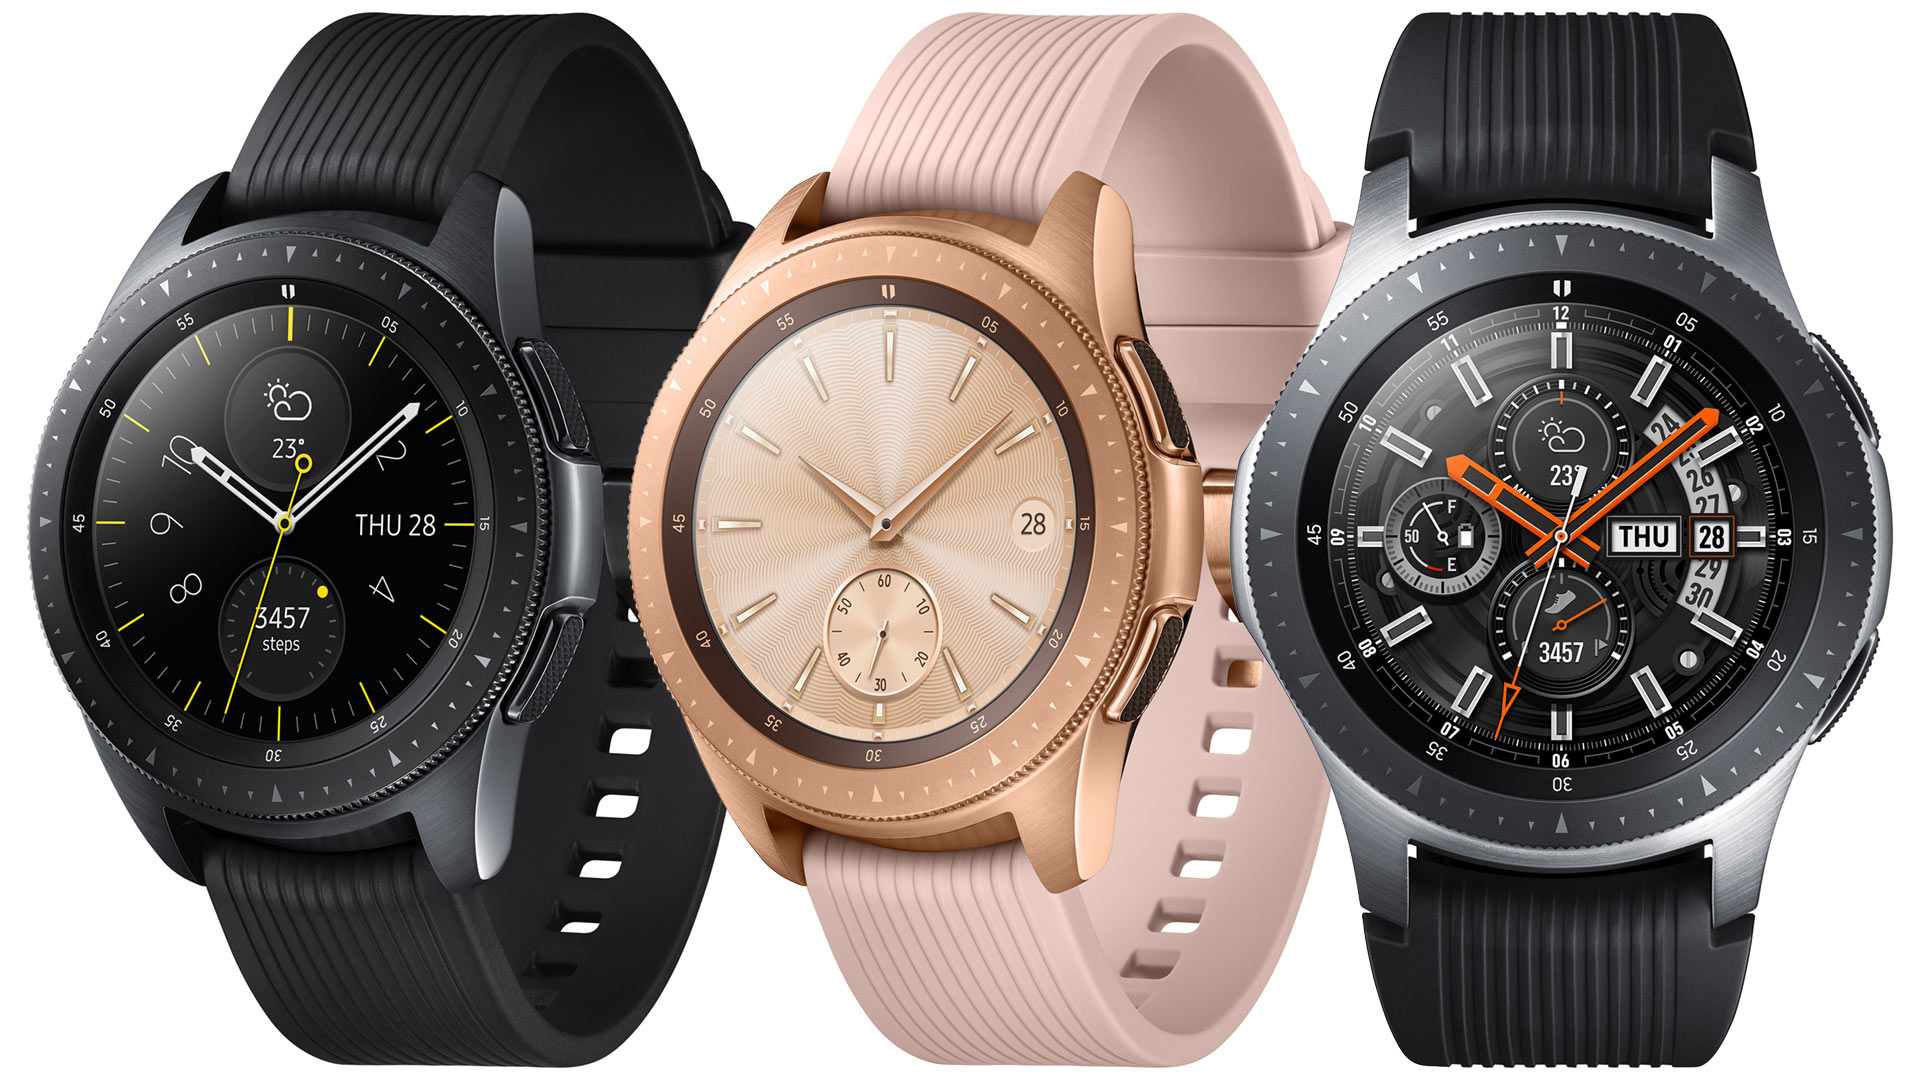 Galaxy watch батарея. Samsung Galaxy watch 42mm. Samsung Galaxy watch 4 45mm. Samsung Galaxy watch 2018. Samsung Galaxy watch SM-r810.